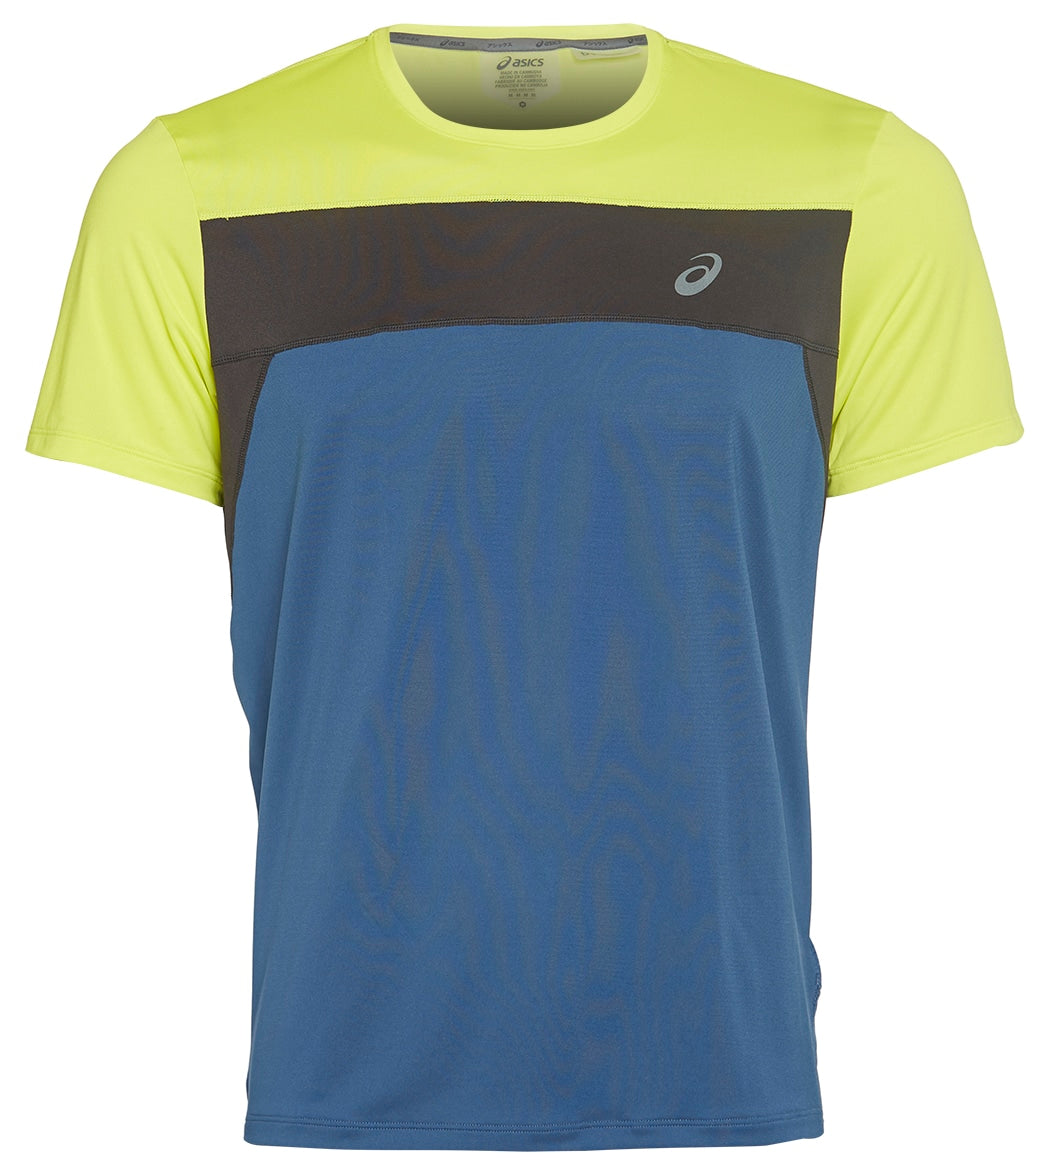 Asics Men's Race Short Sleeve Top Shirt - Grand Shark/Sour Yuzu Medium Size Medium Polyester - Swimoutlet.com